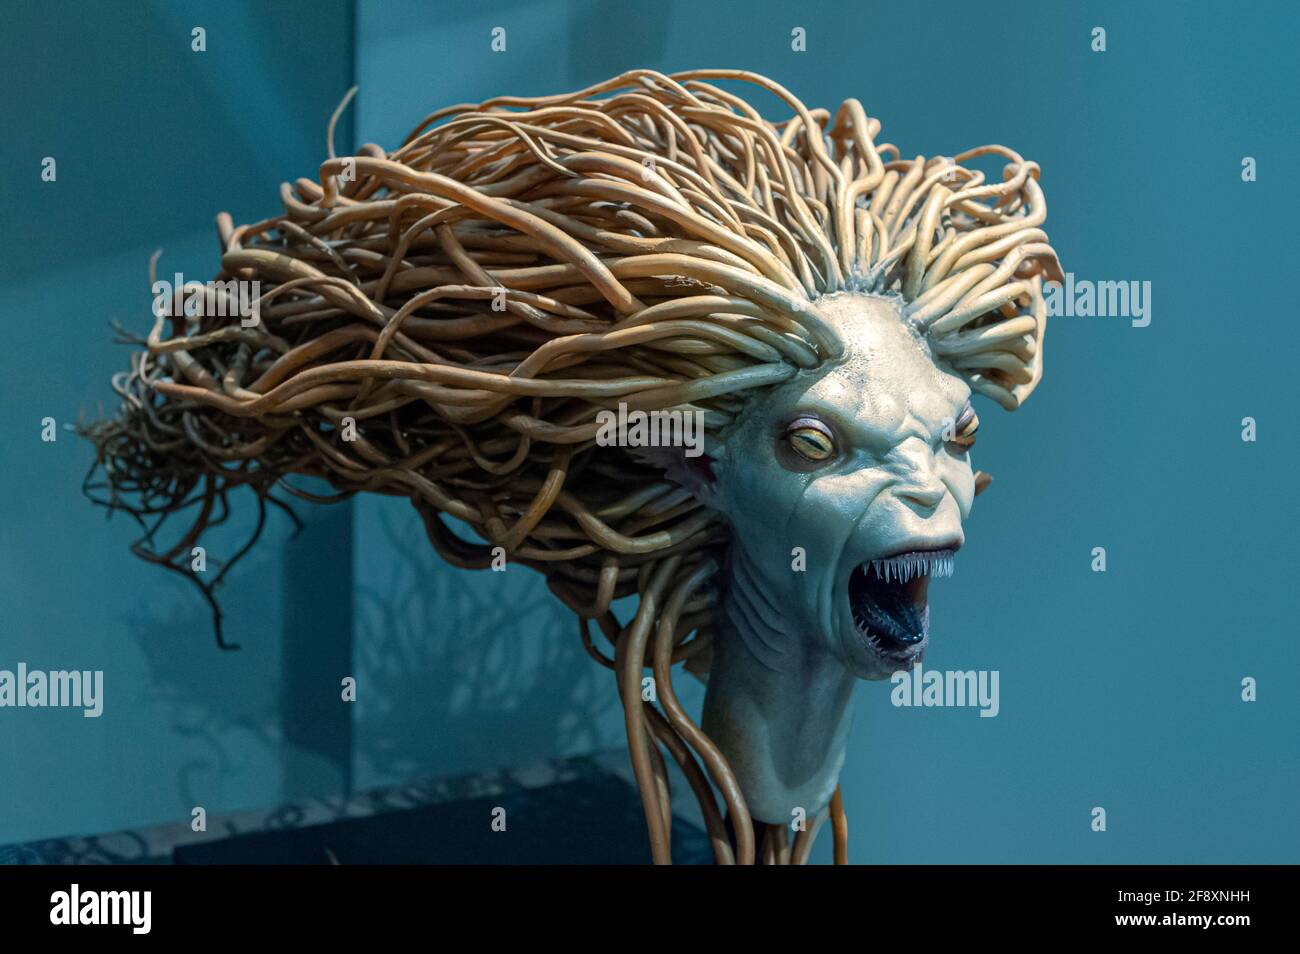 Meerjungfrau-Monster kreischendes Meereskreaturmodell aus Harry Potter und dem Feuerkelch. Warner Bros. Studio Tour, Leavesden, London, Großbritannien Stockfoto